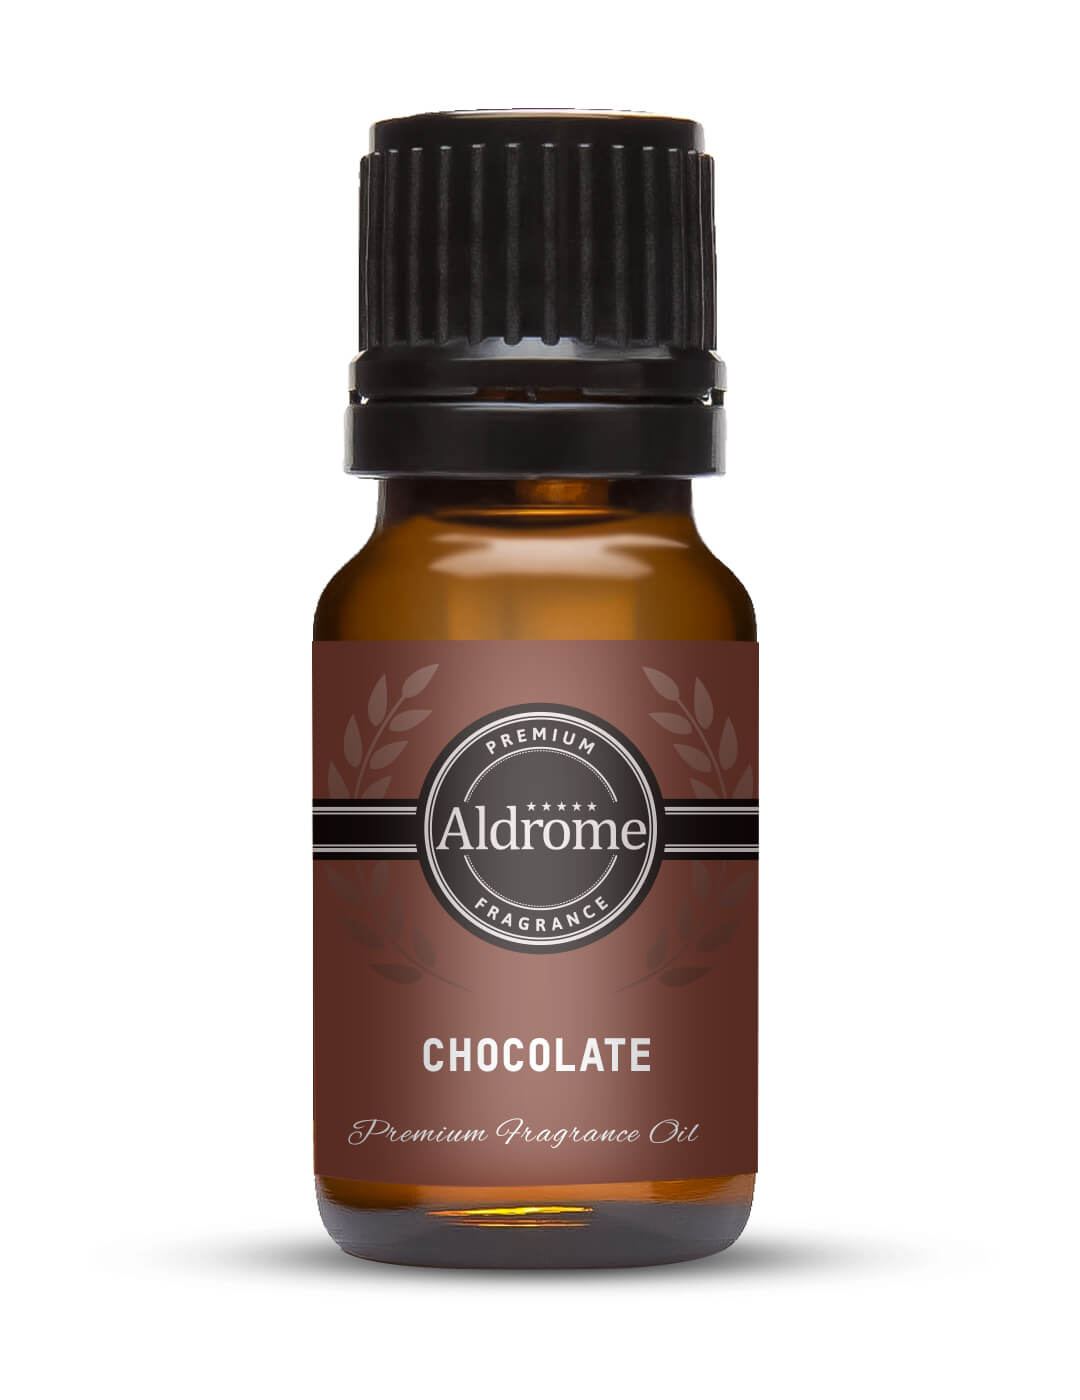 Chocolate Fragrance Oil - 10ml at Best price | Aldrome Premium Fragrance Oil